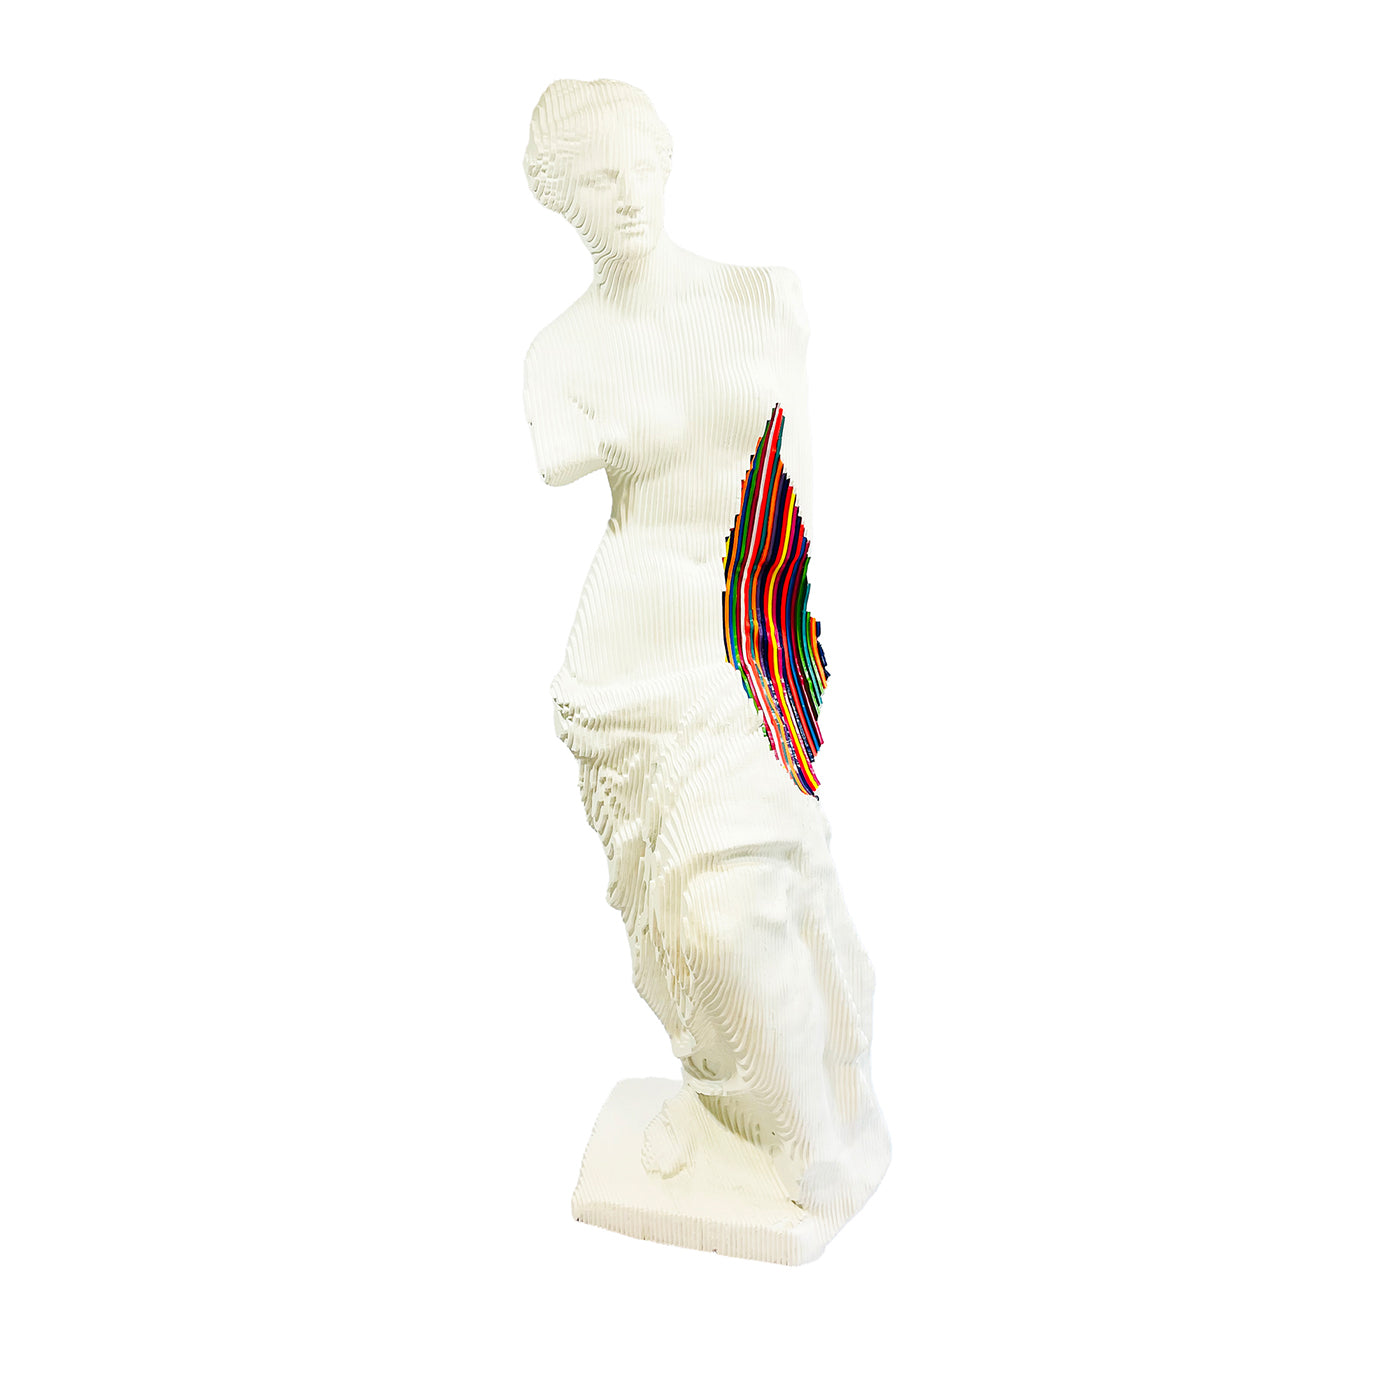 Sculpture Vénus Milo Colormination - Vue principale